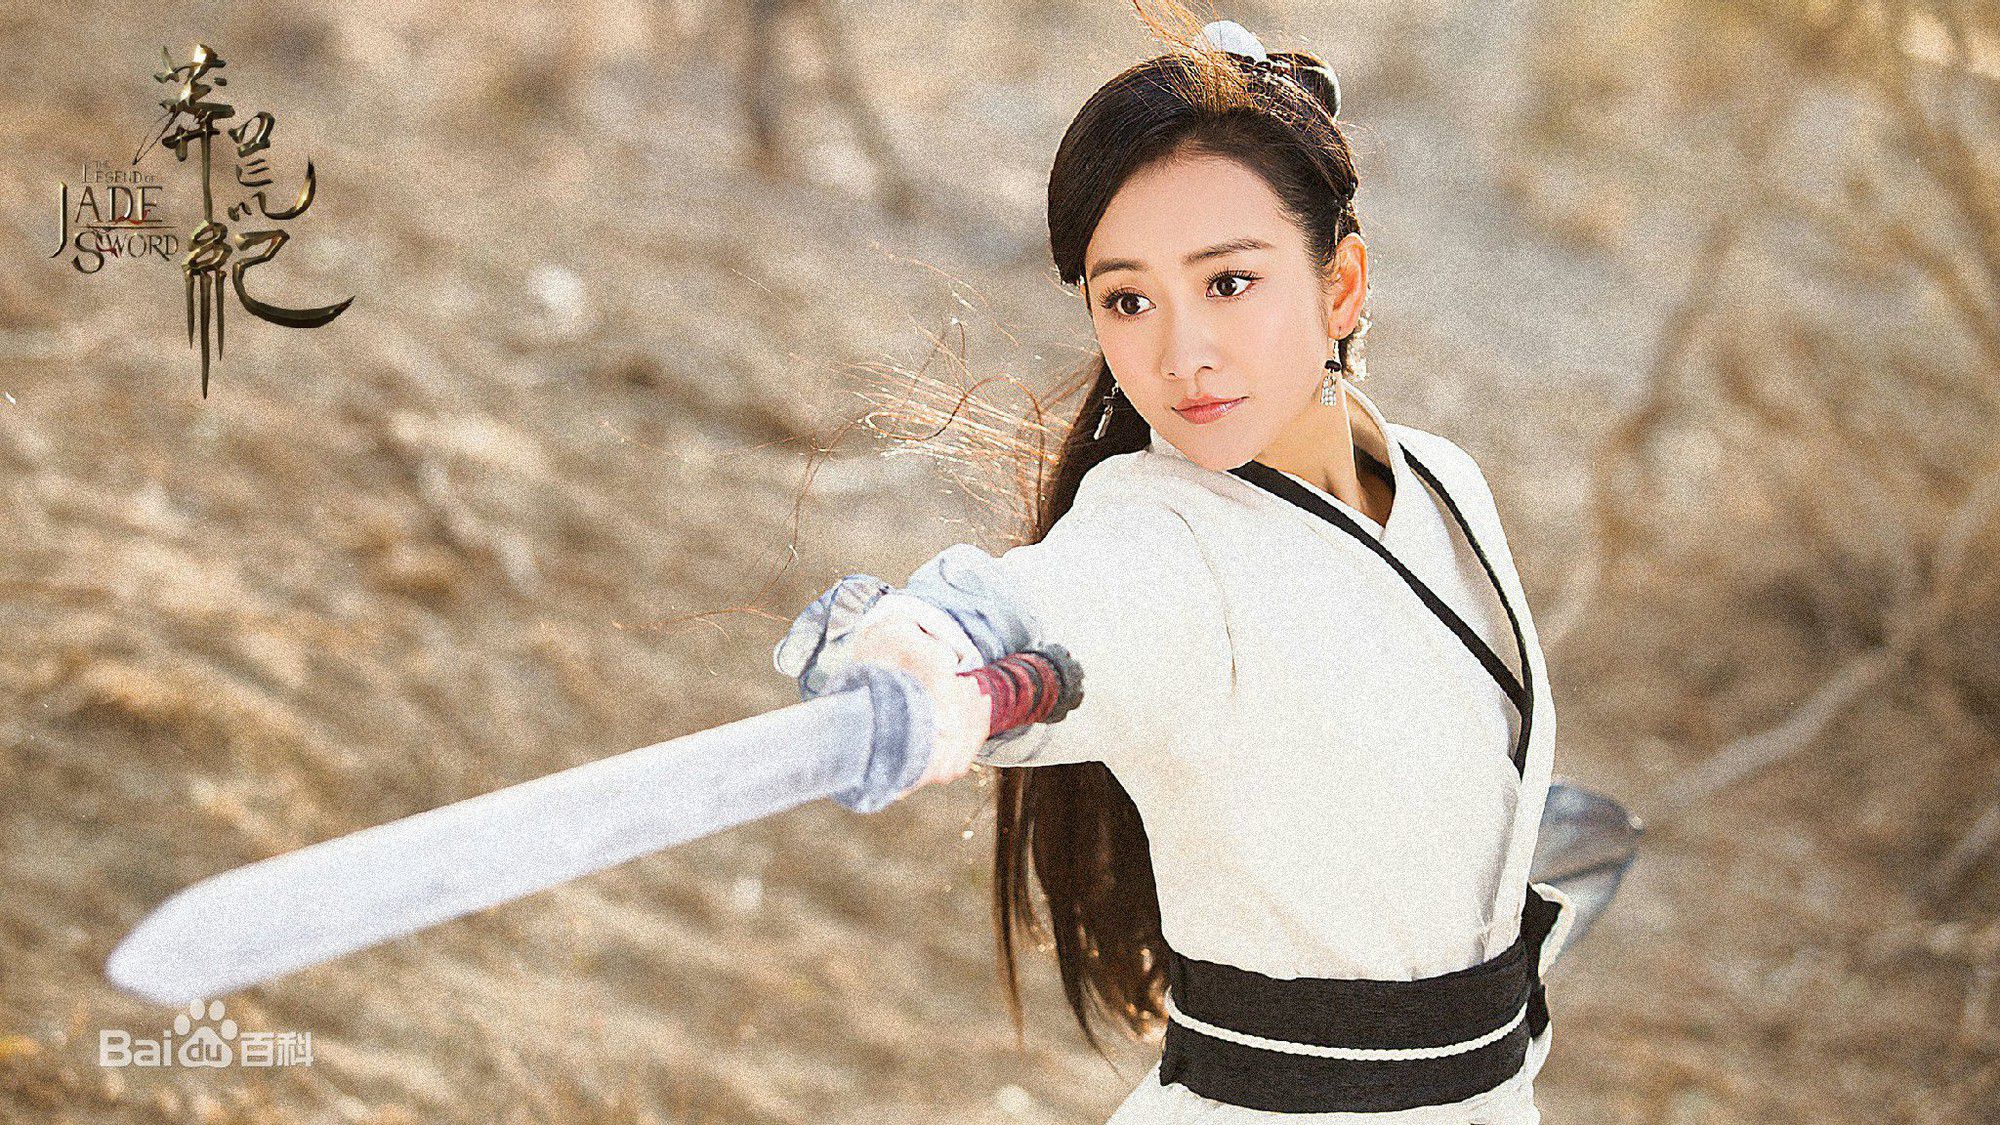 Tổng hợp nhạc phim (OST) Mãng Hoang Kỷ - The Legend of Jade Sword (4)